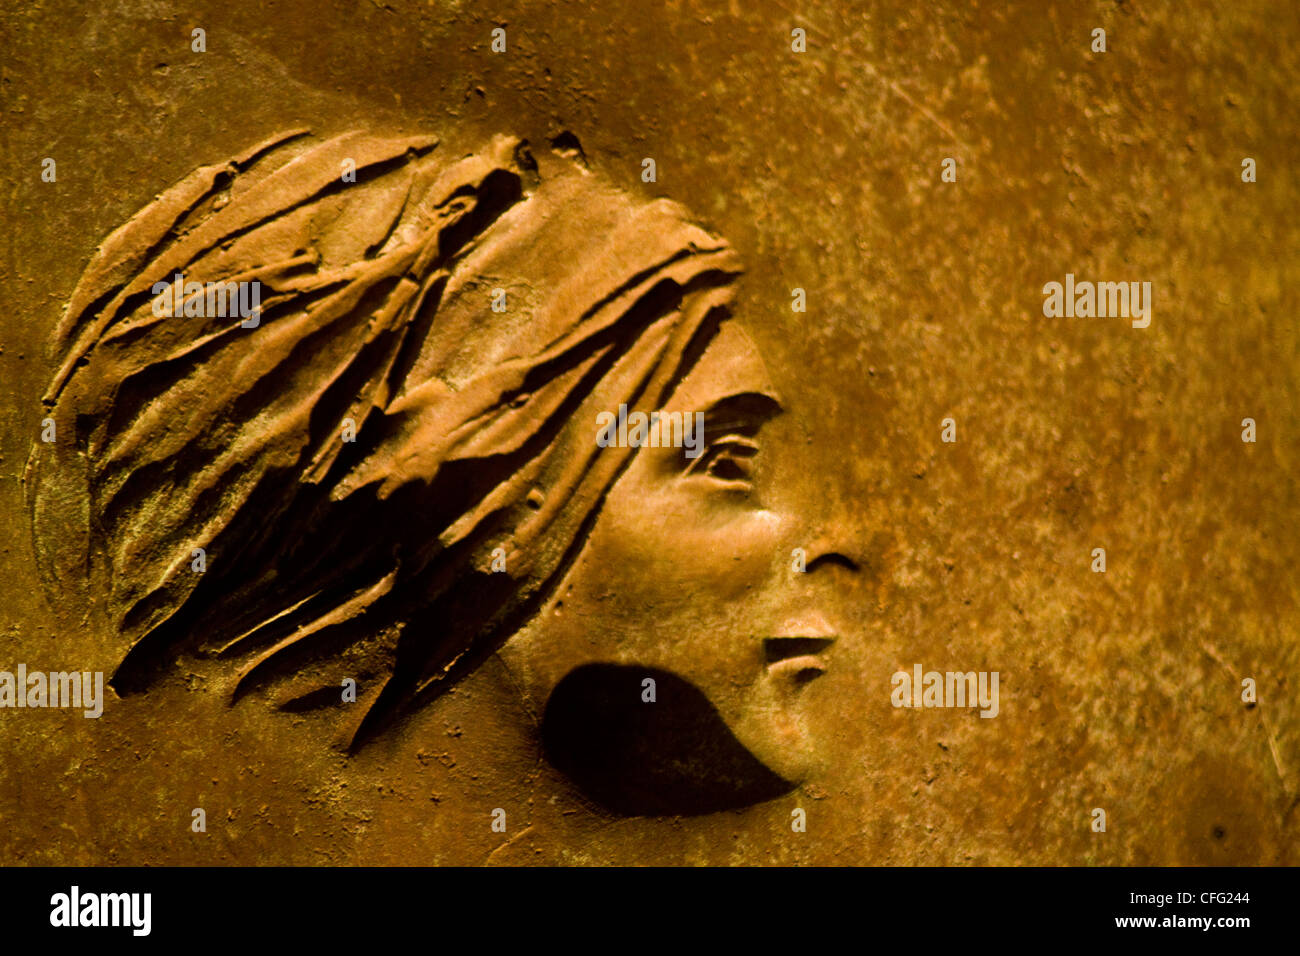 Close up de bas-relief en bronze figure négative par Robert Graham intitulé Programmes sociaux'-2ème terme prix RAD Mem, Washington DC Banque D'Images